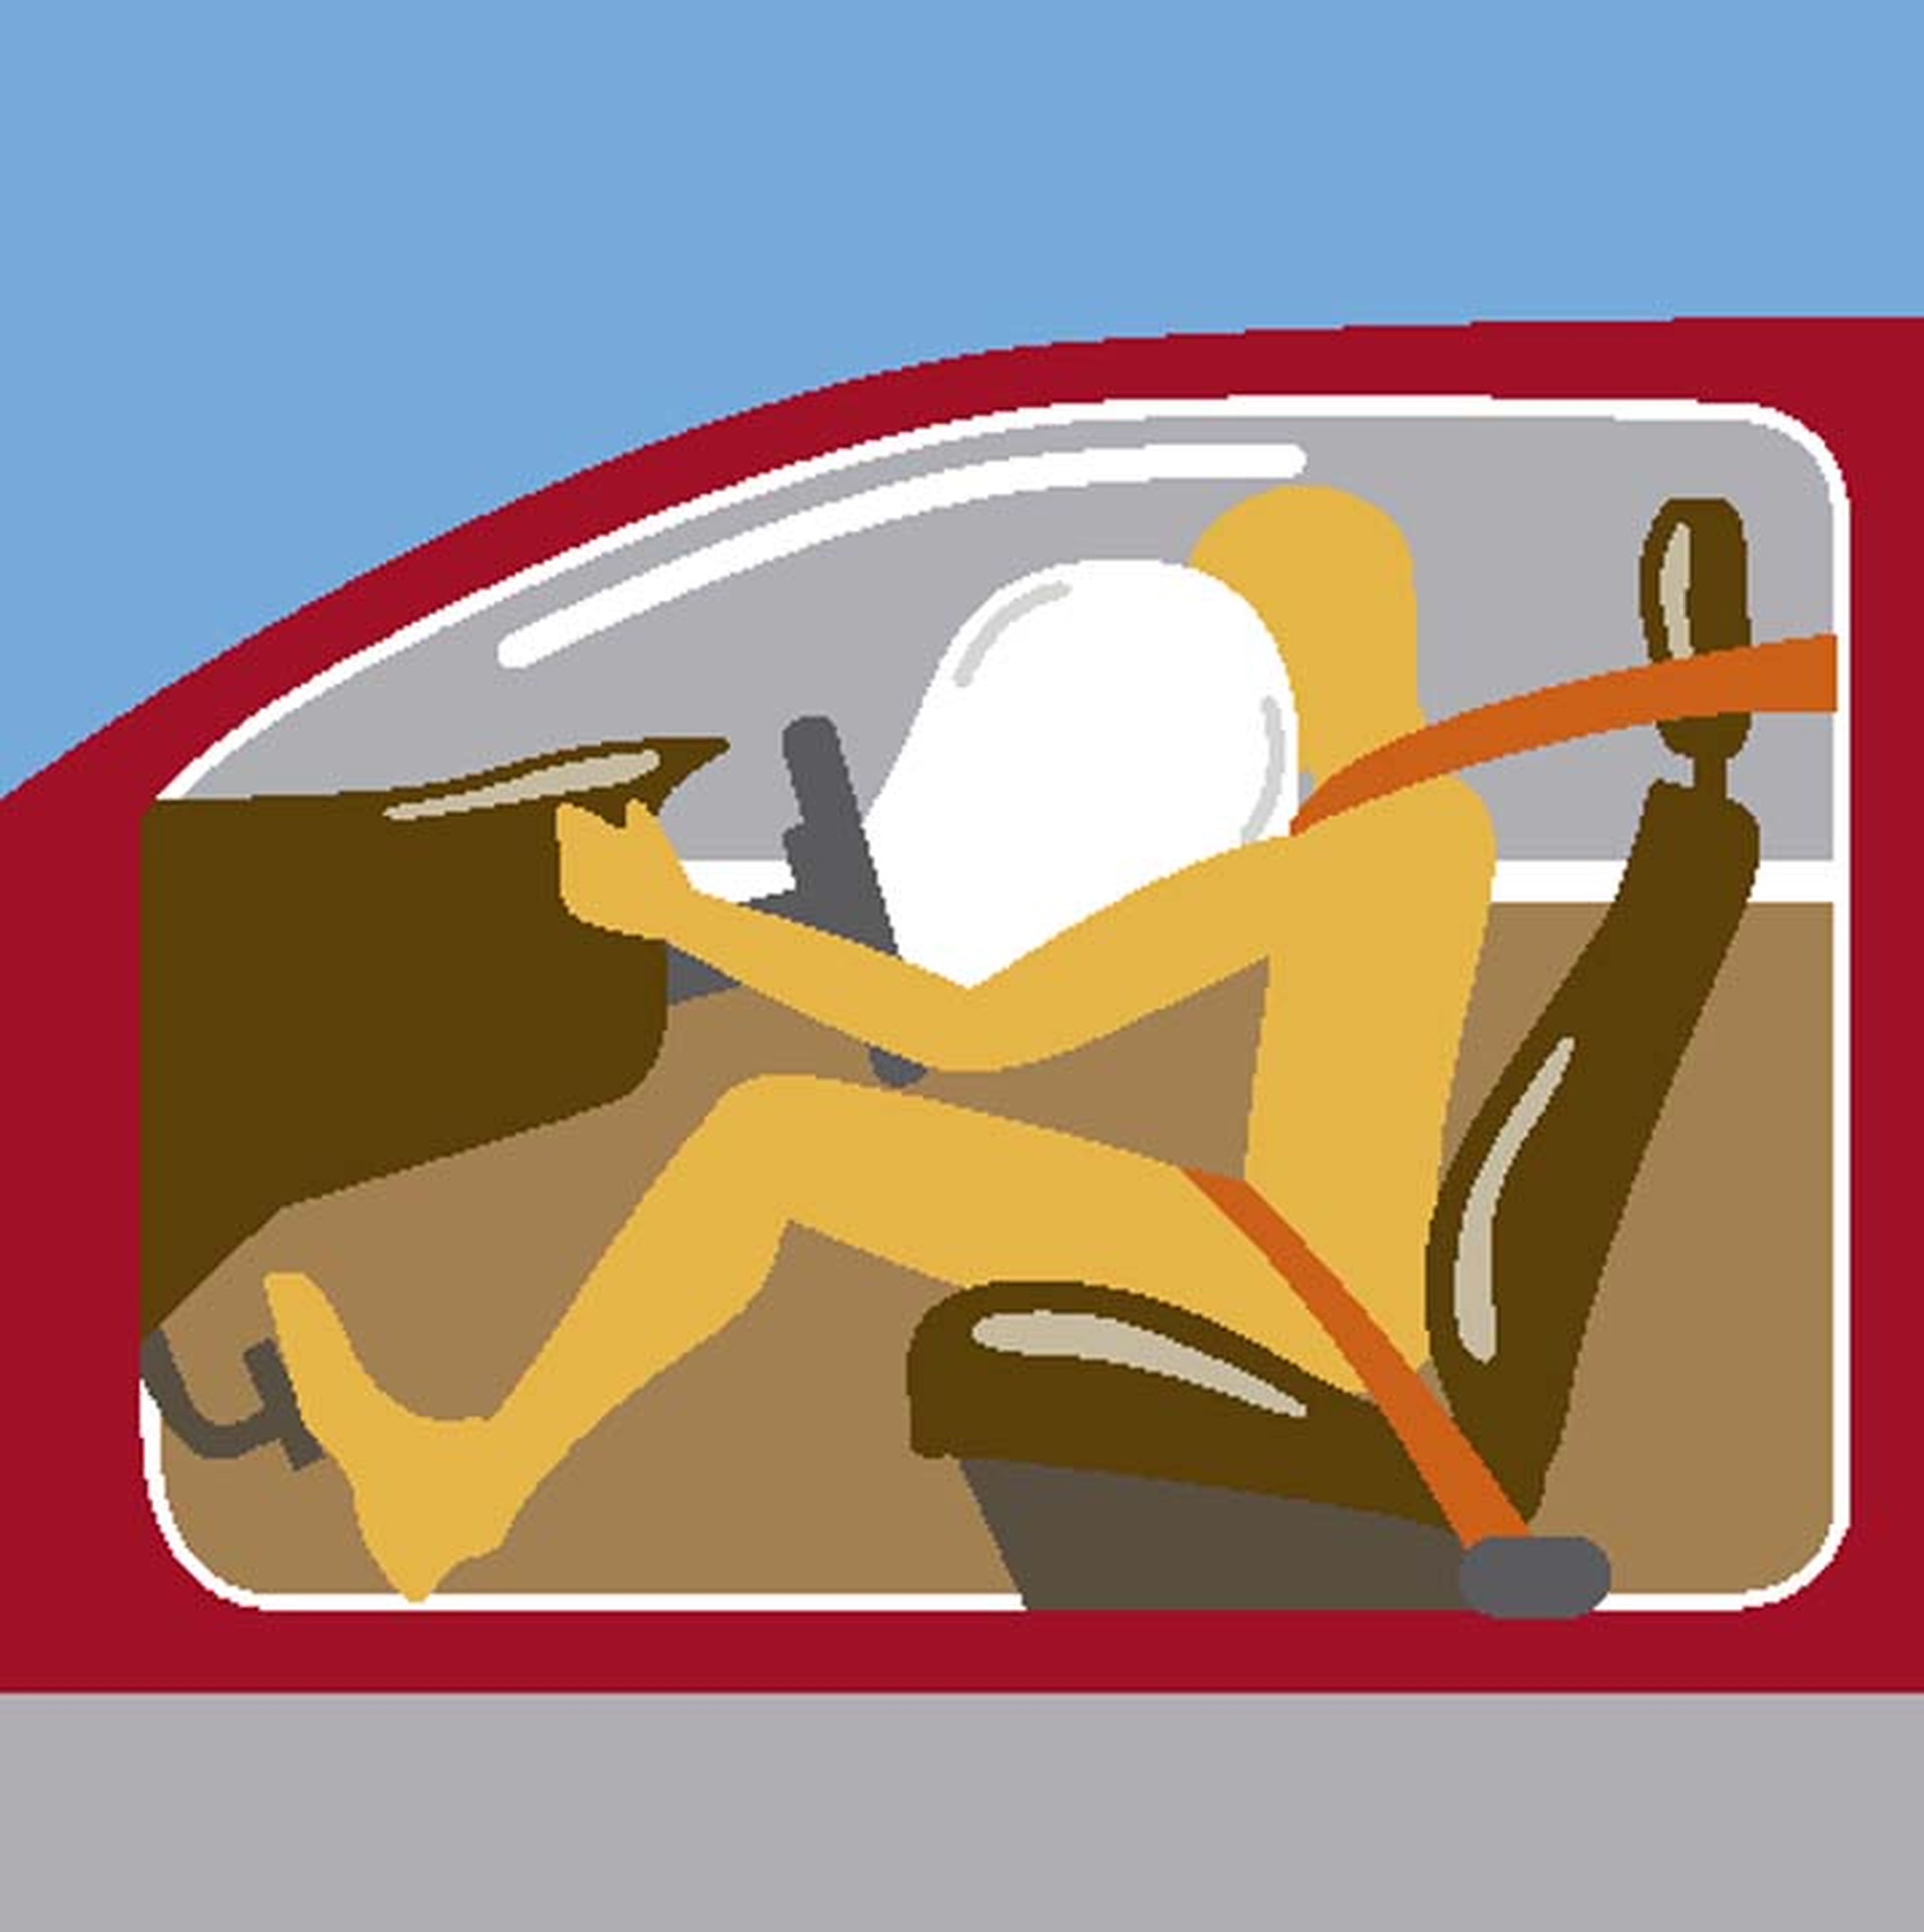 Historia del airbag